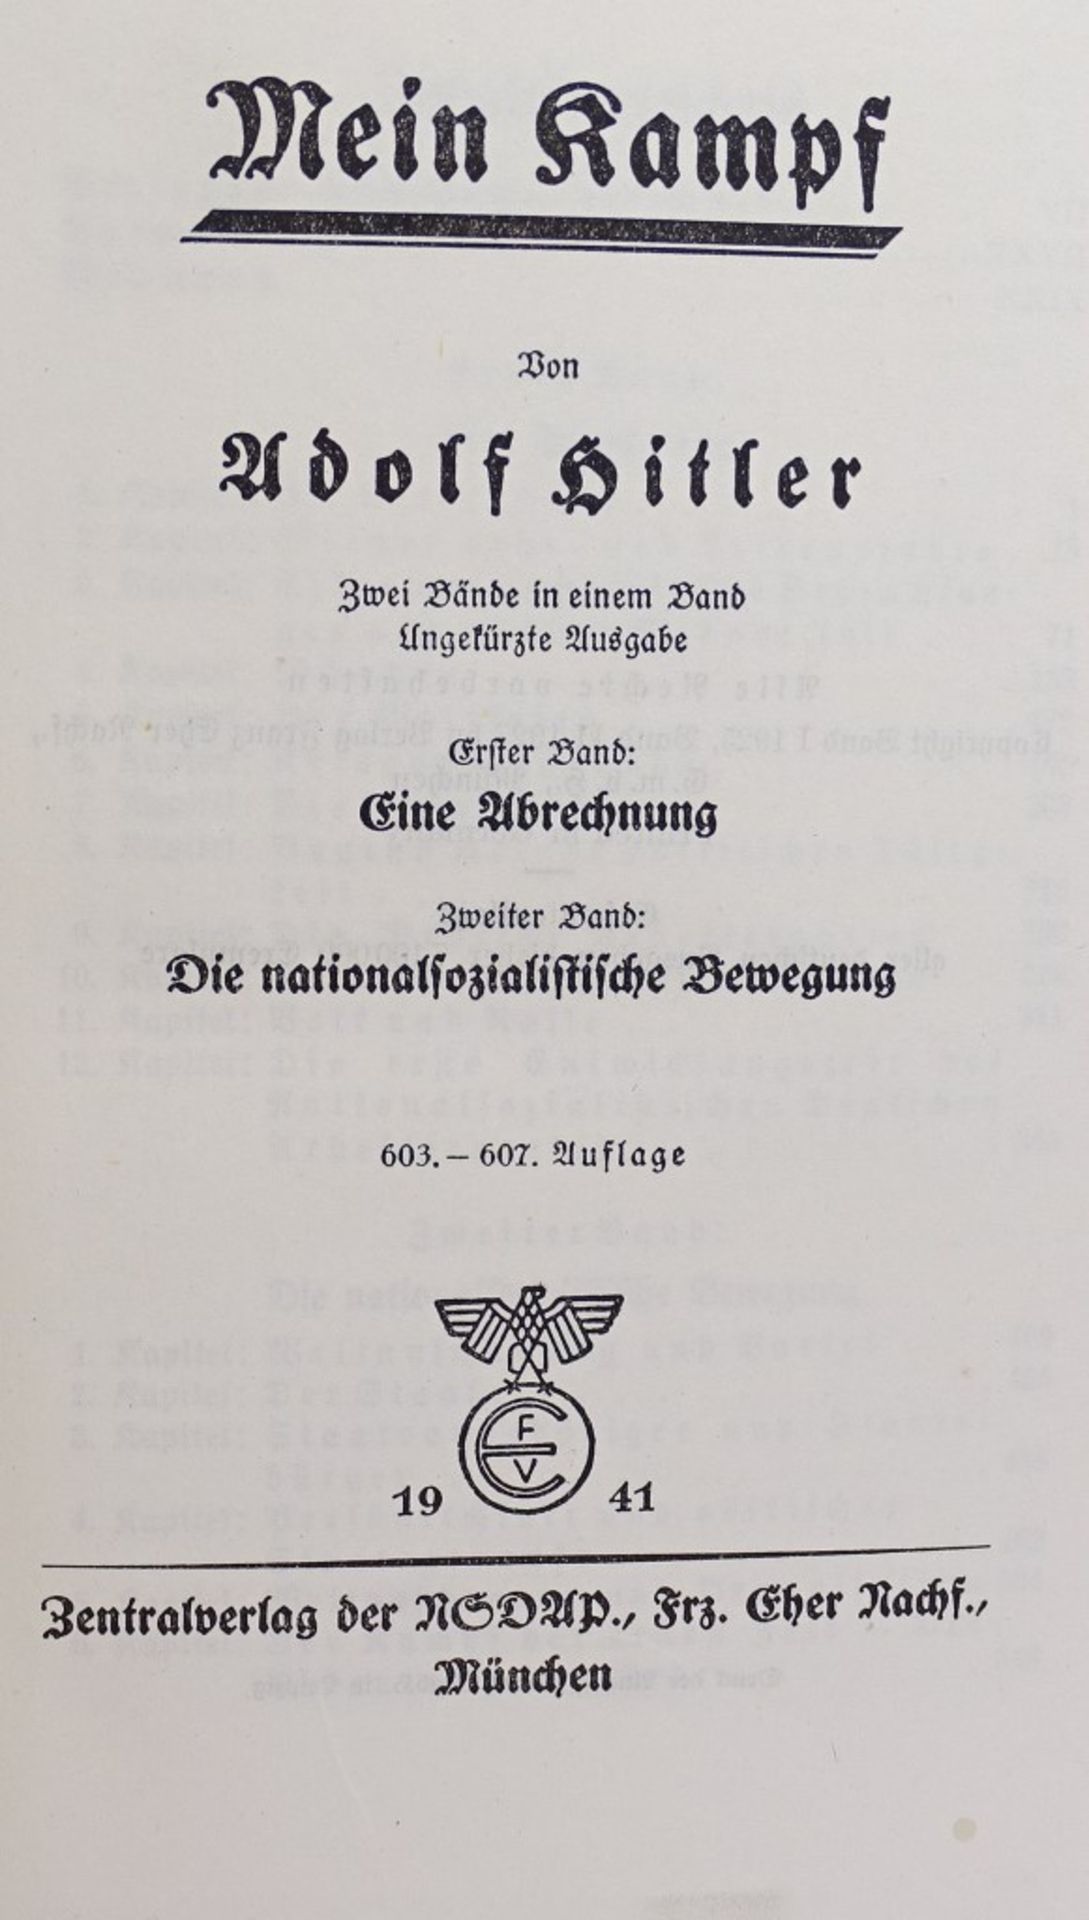 Adolf Hitler "Mein Kampf",blaue Ausgabe, 1941 ,sehr gut erhalten - Image 2 of 5